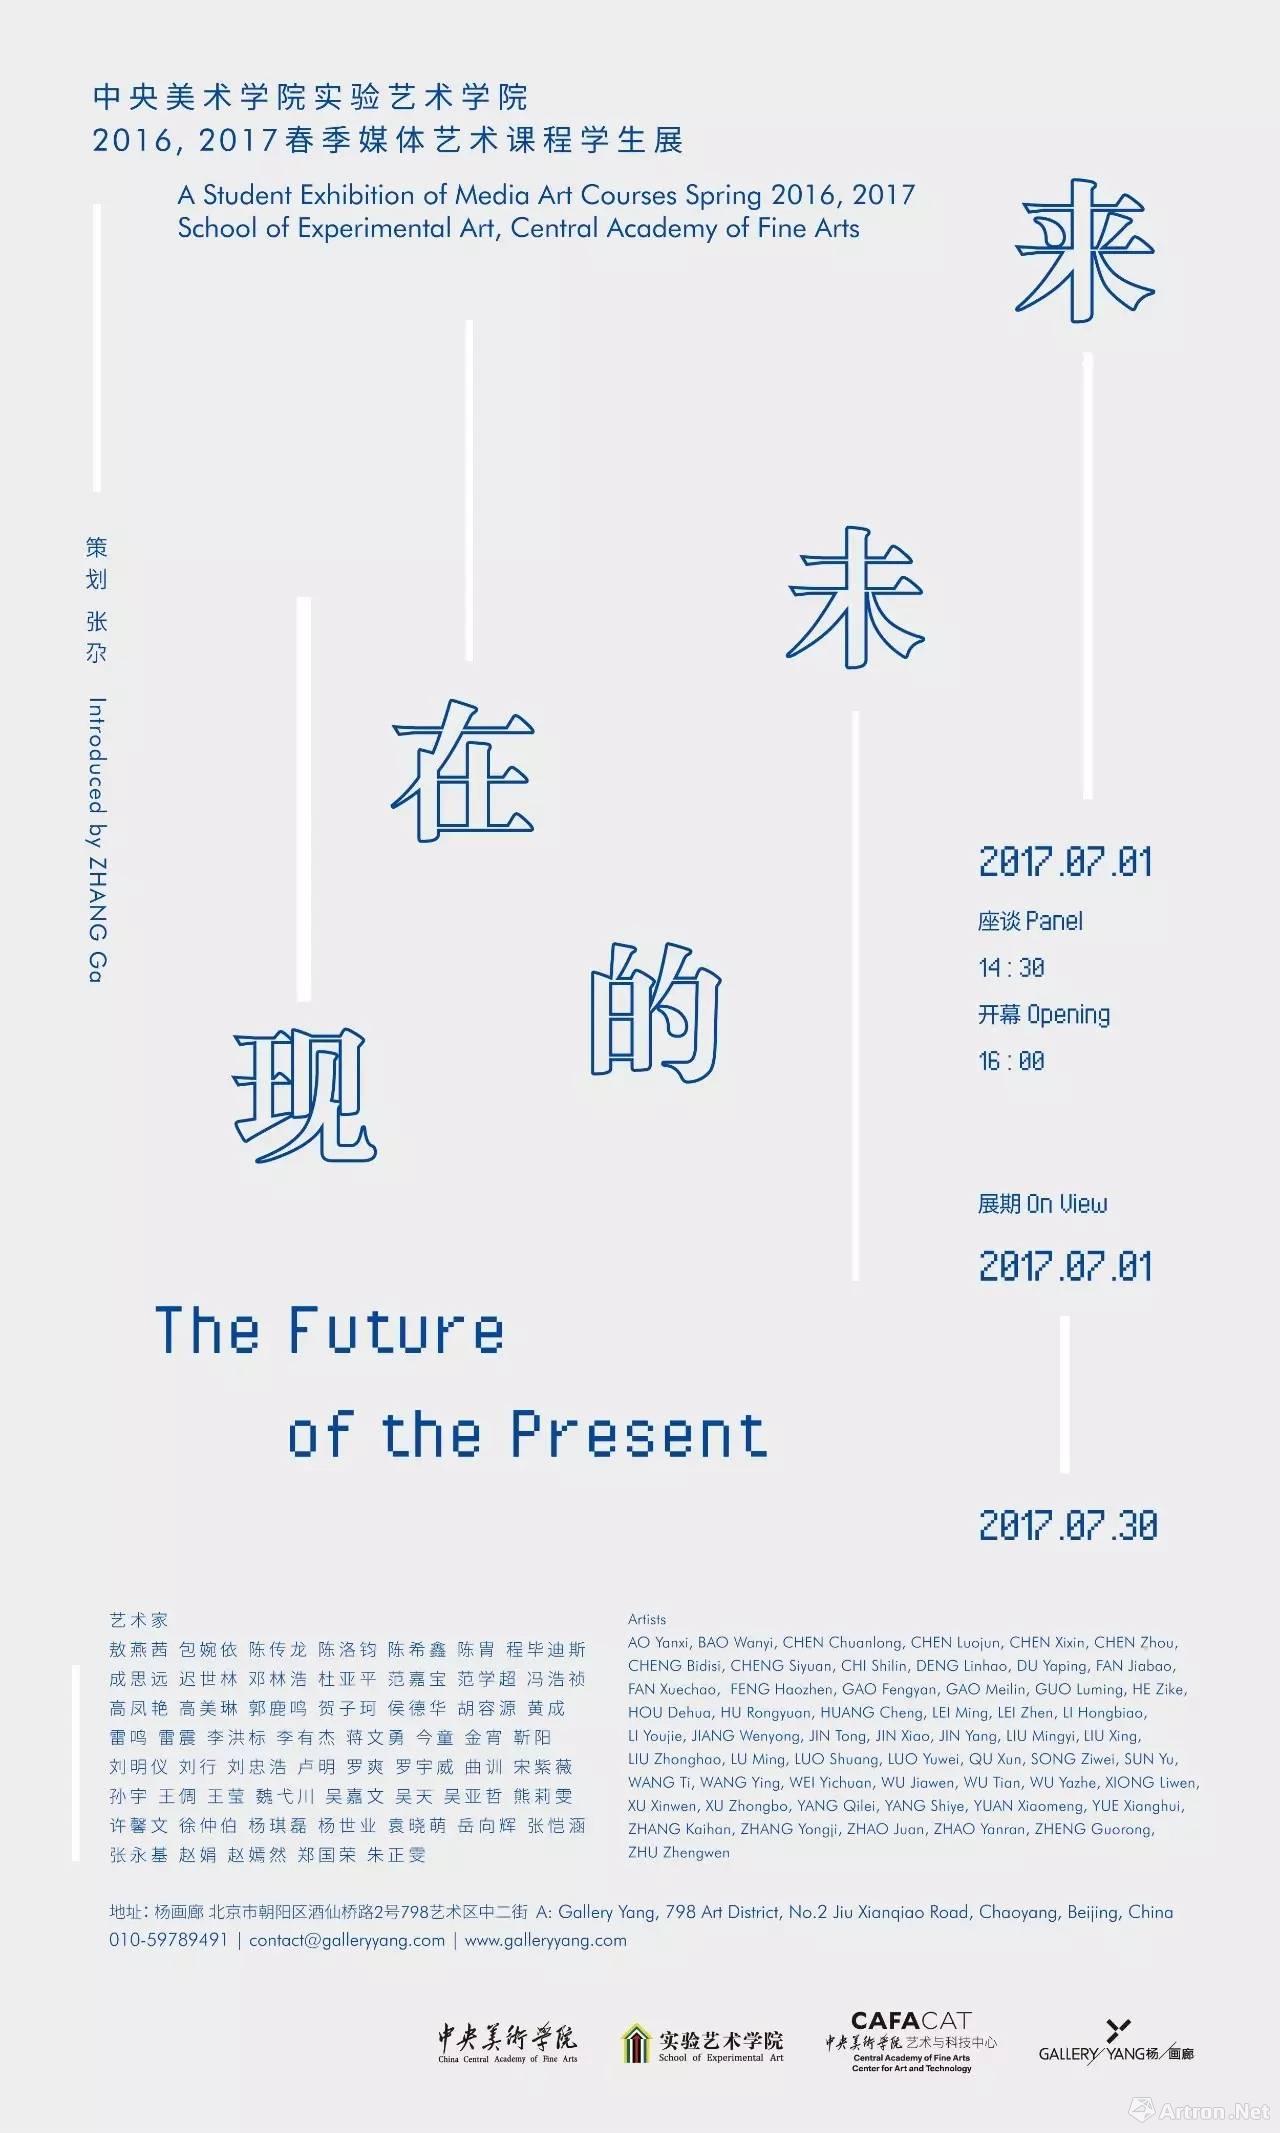 “现在的未来”展在杨画廊开幕 呈现指向未来的媒体艺术